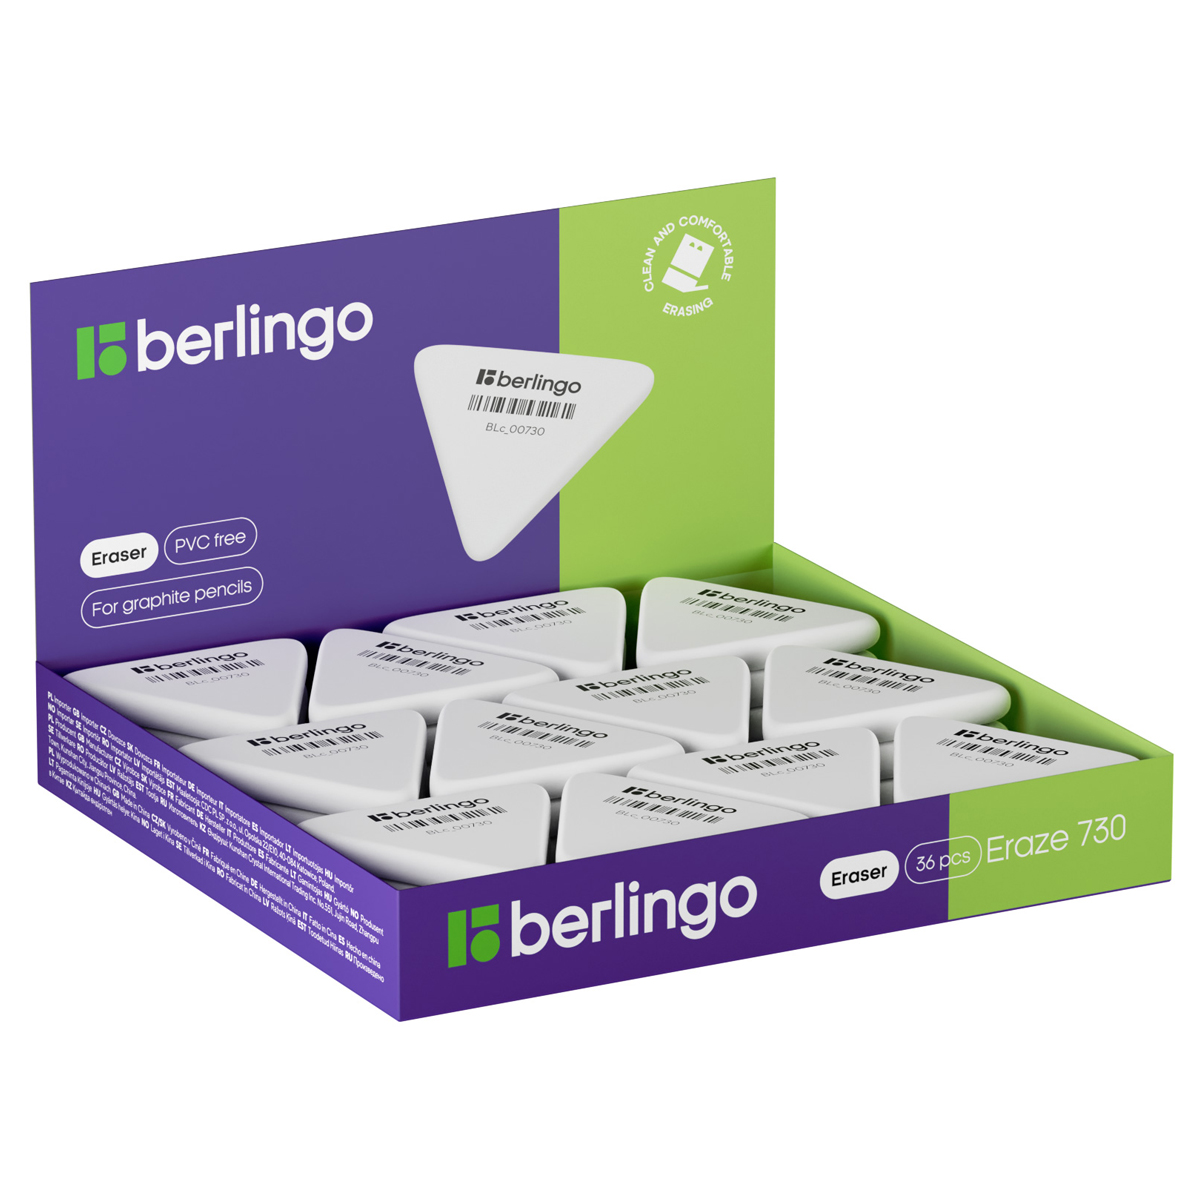 Ластик Berlingo Eraze 730 треугольный, термопластичная резина, 50*44*7мм (большой)